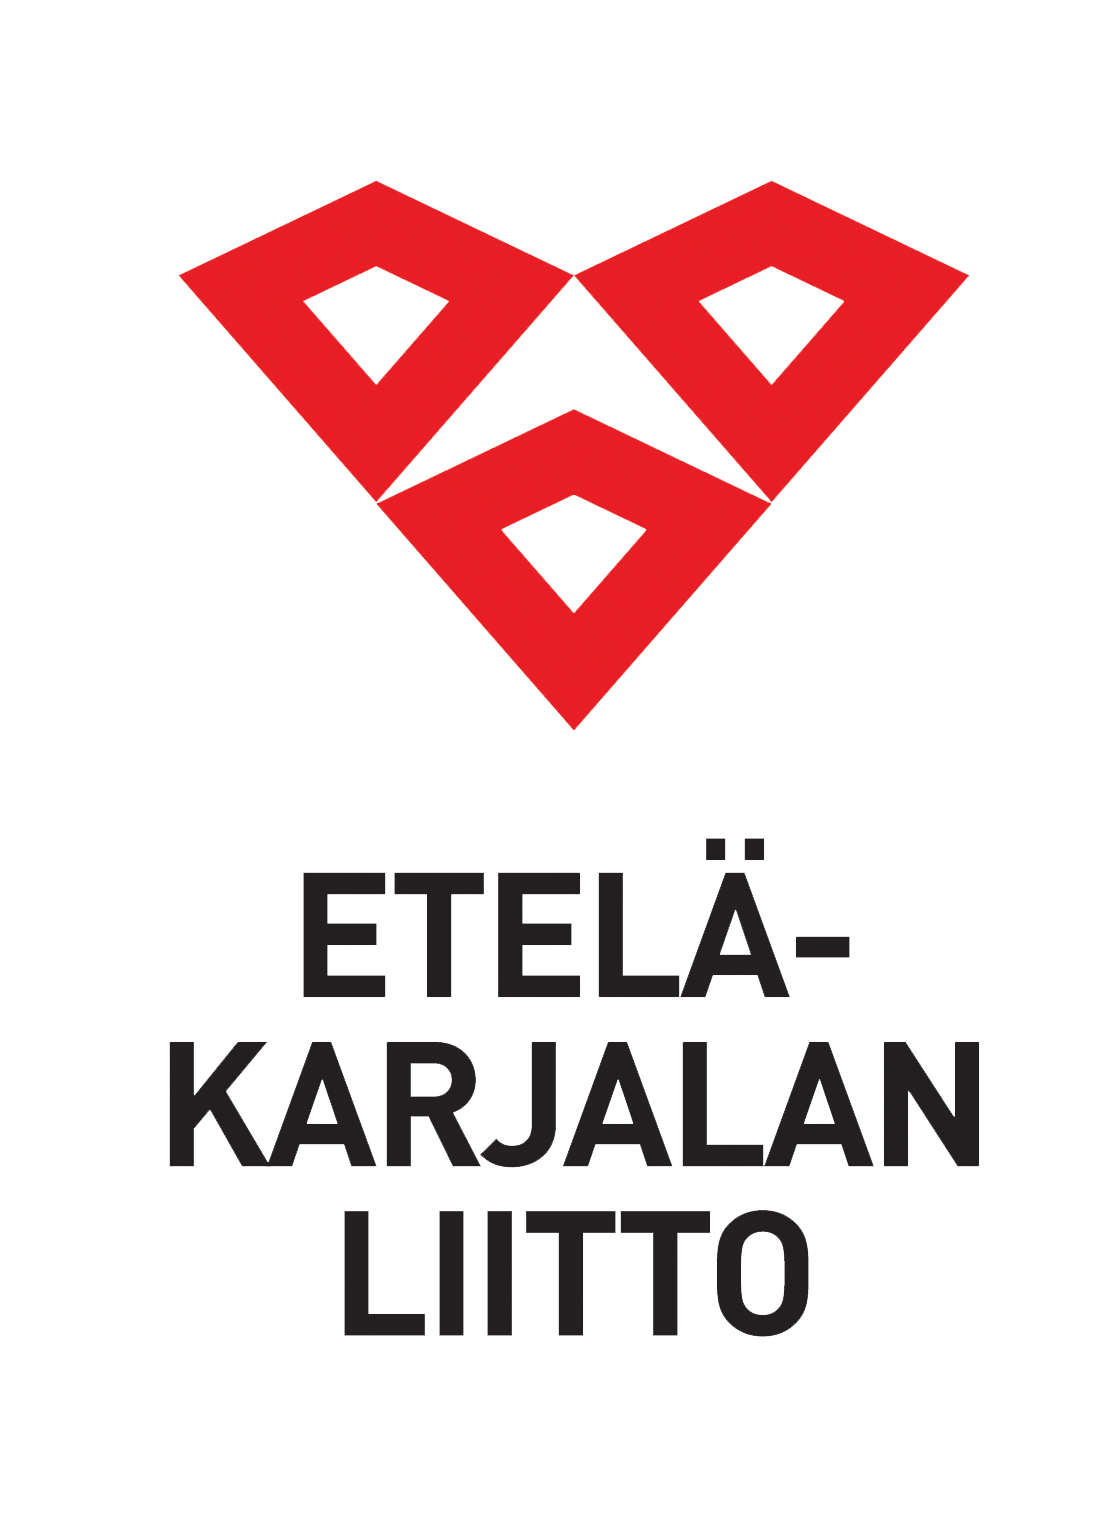 Etelä-Karjalan liitto ja logo.